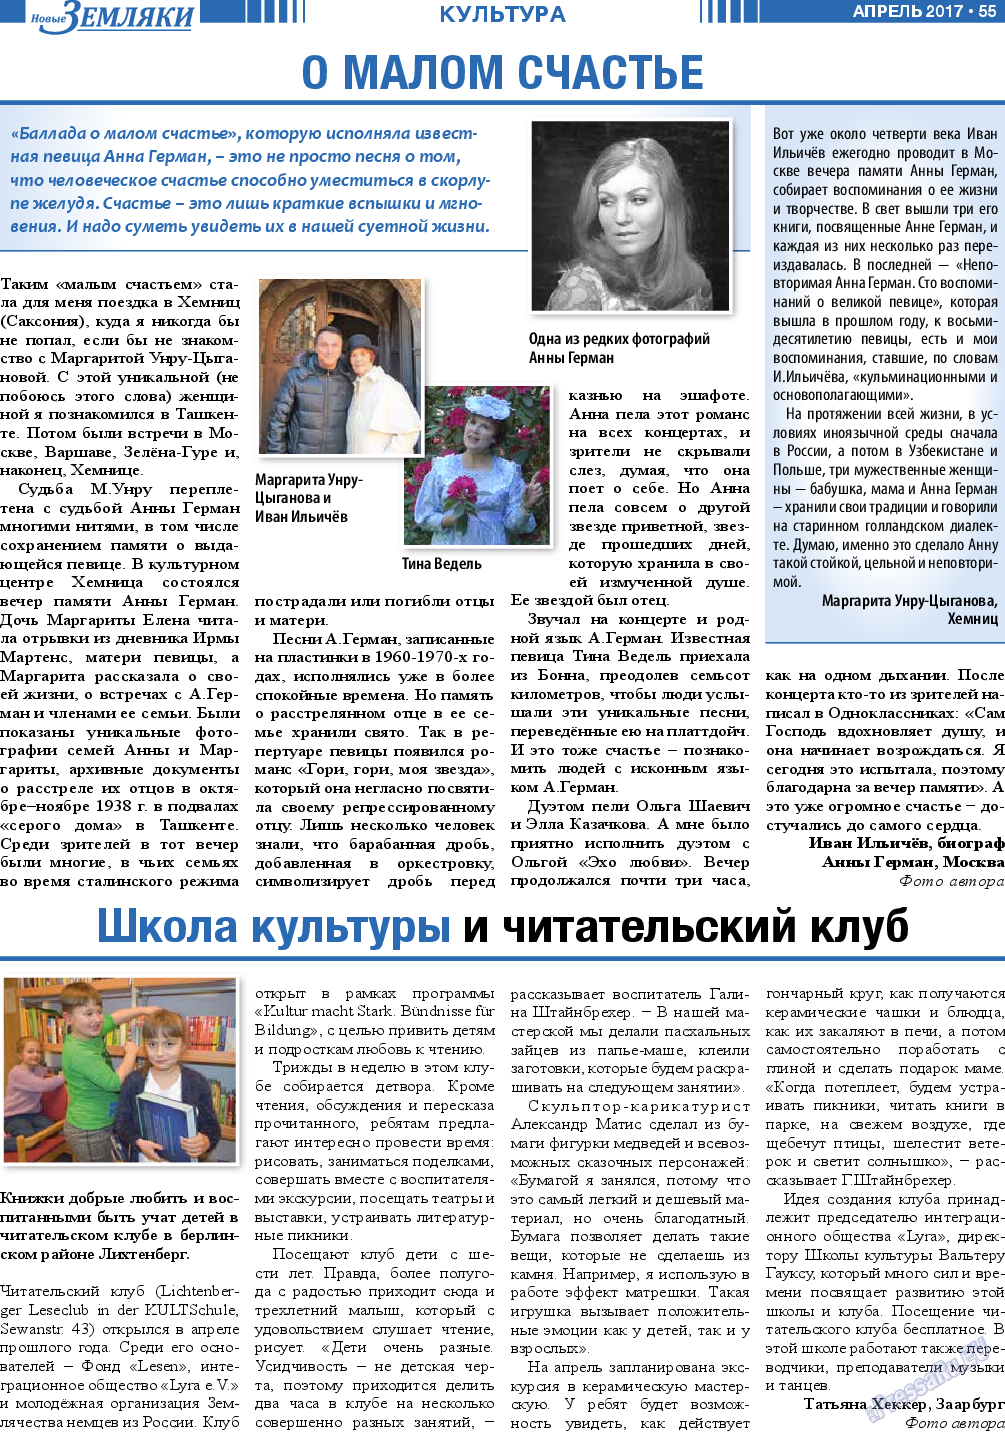 Новые Земляки, газета. 2017 №4 стр.55